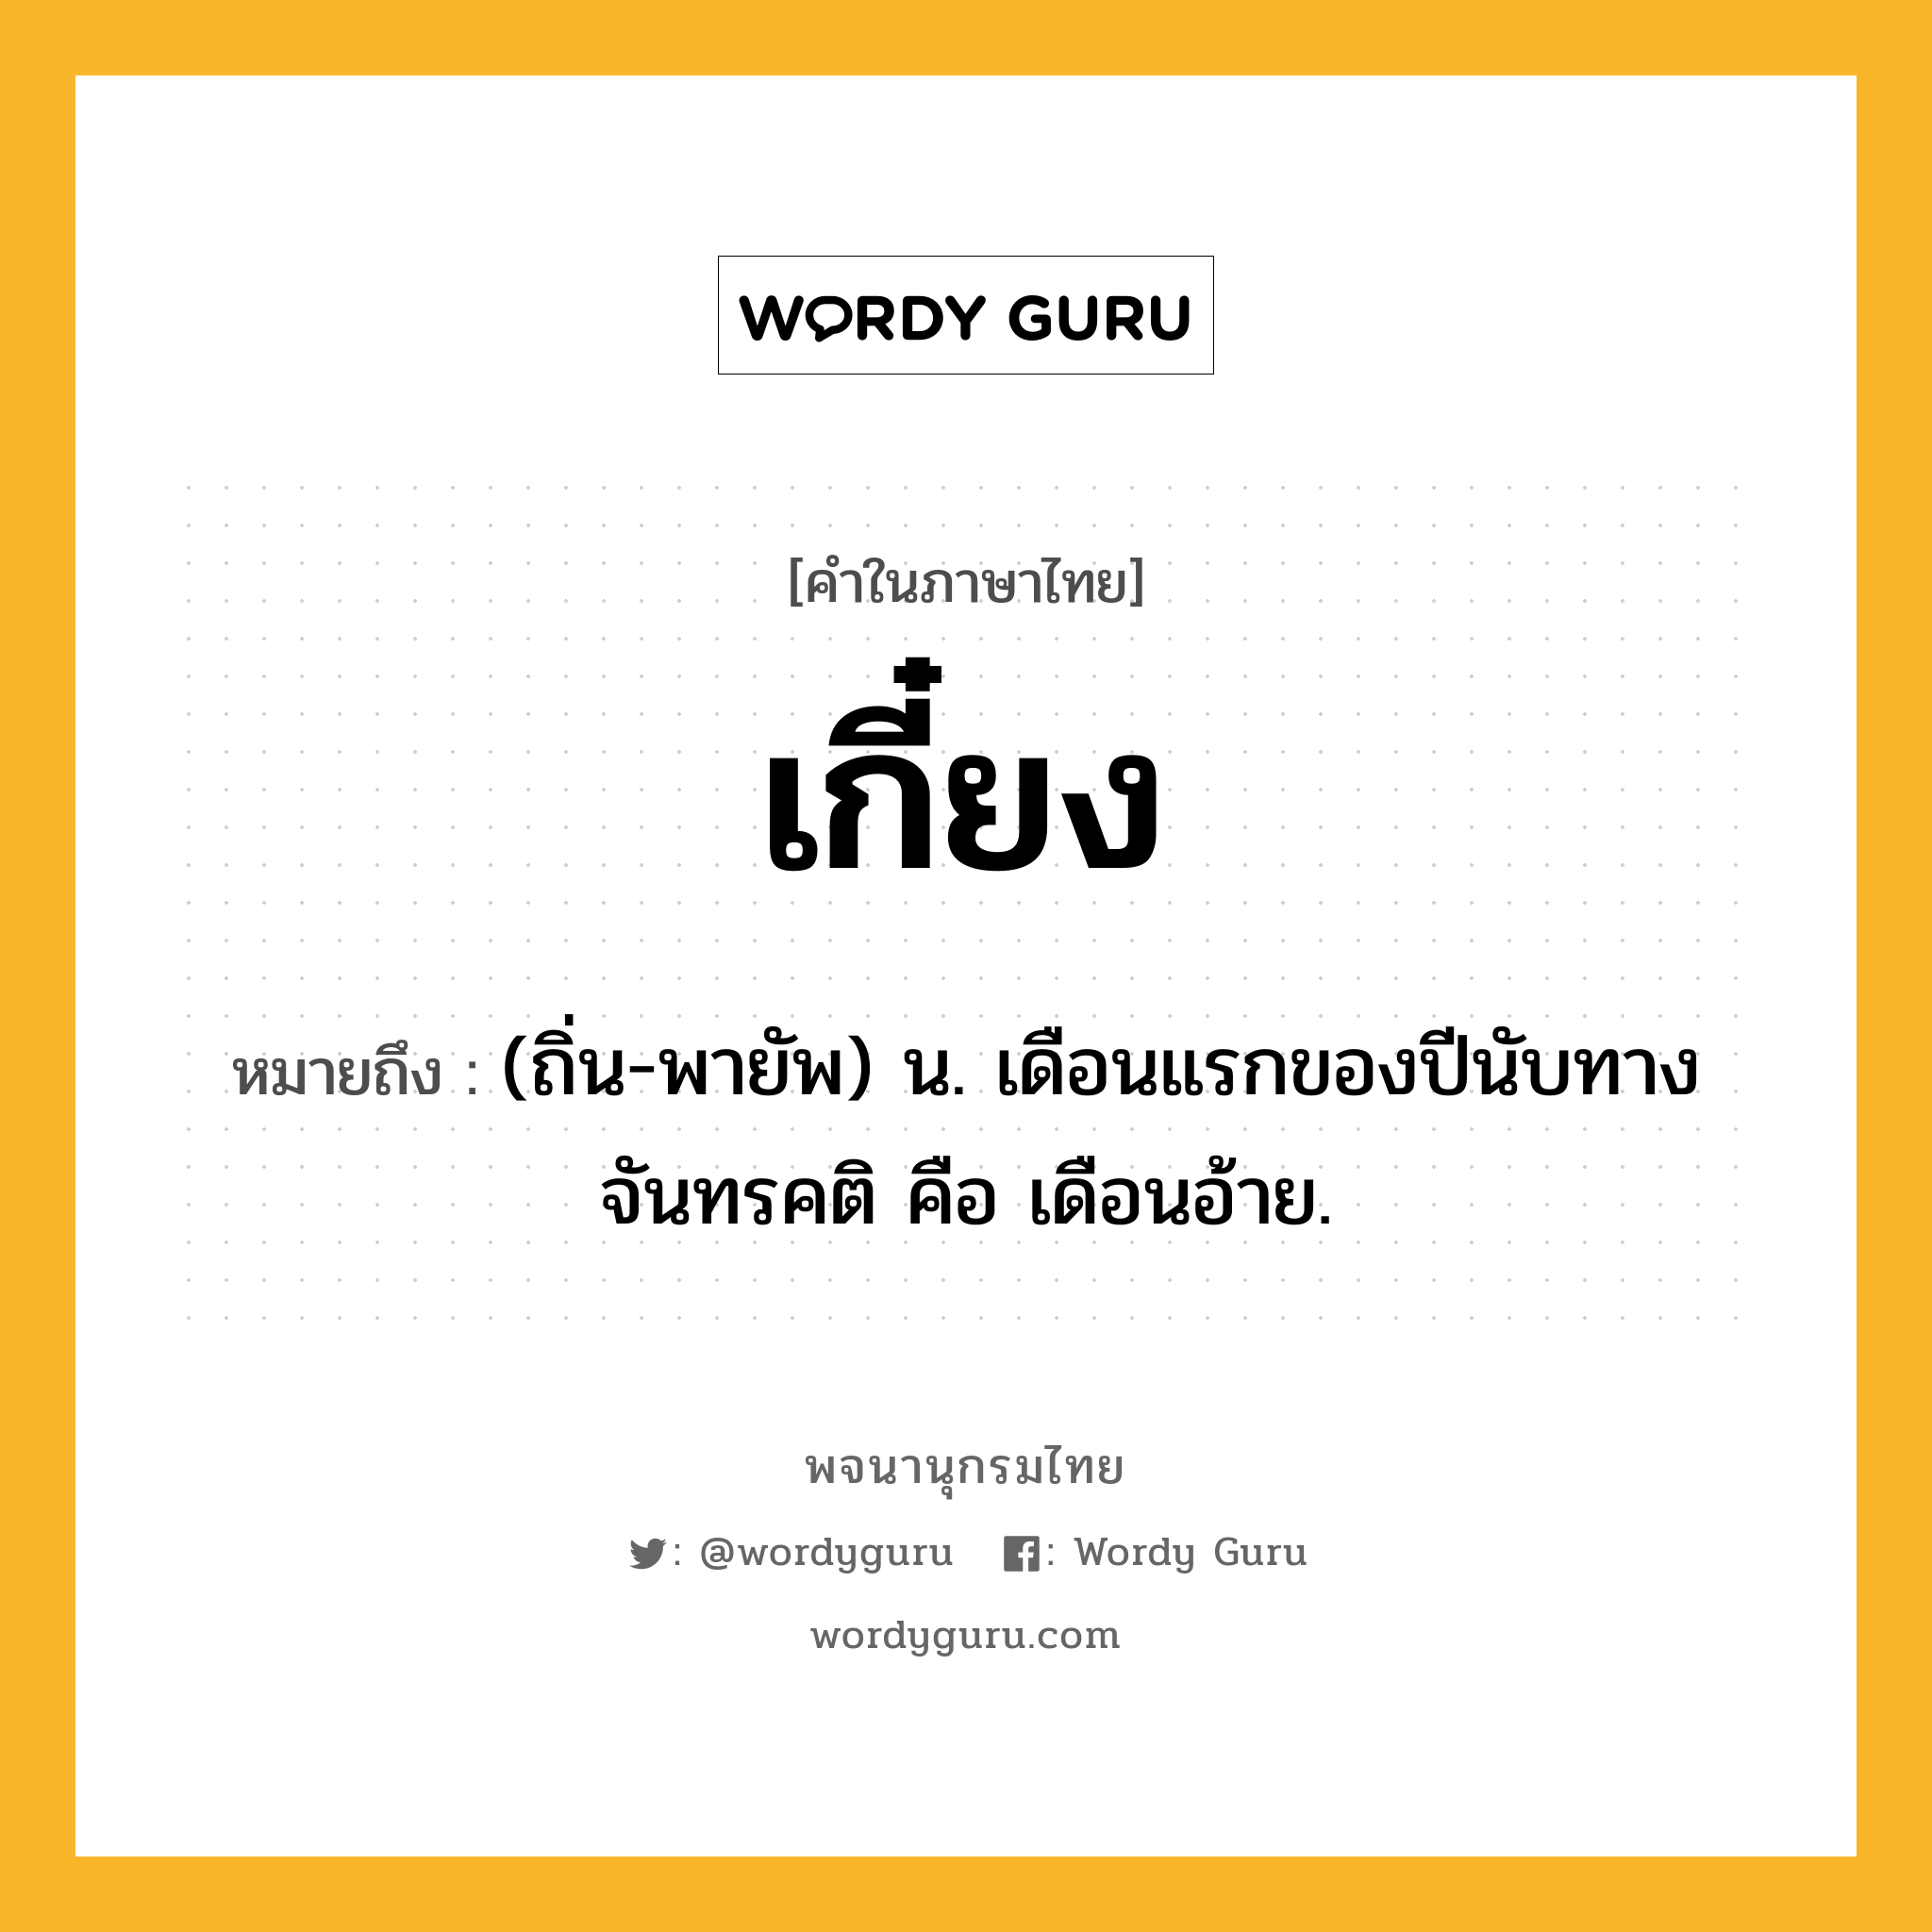 เกี๋ยง ความหมาย หมายถึงอะไร?, คำในภาษาไทย เกี๋ยง หมายถึง (ถิ่น-พายัพ) น. เดือนแรกของปีนับทางจันทรคติ คือ เดือนอ้าย.